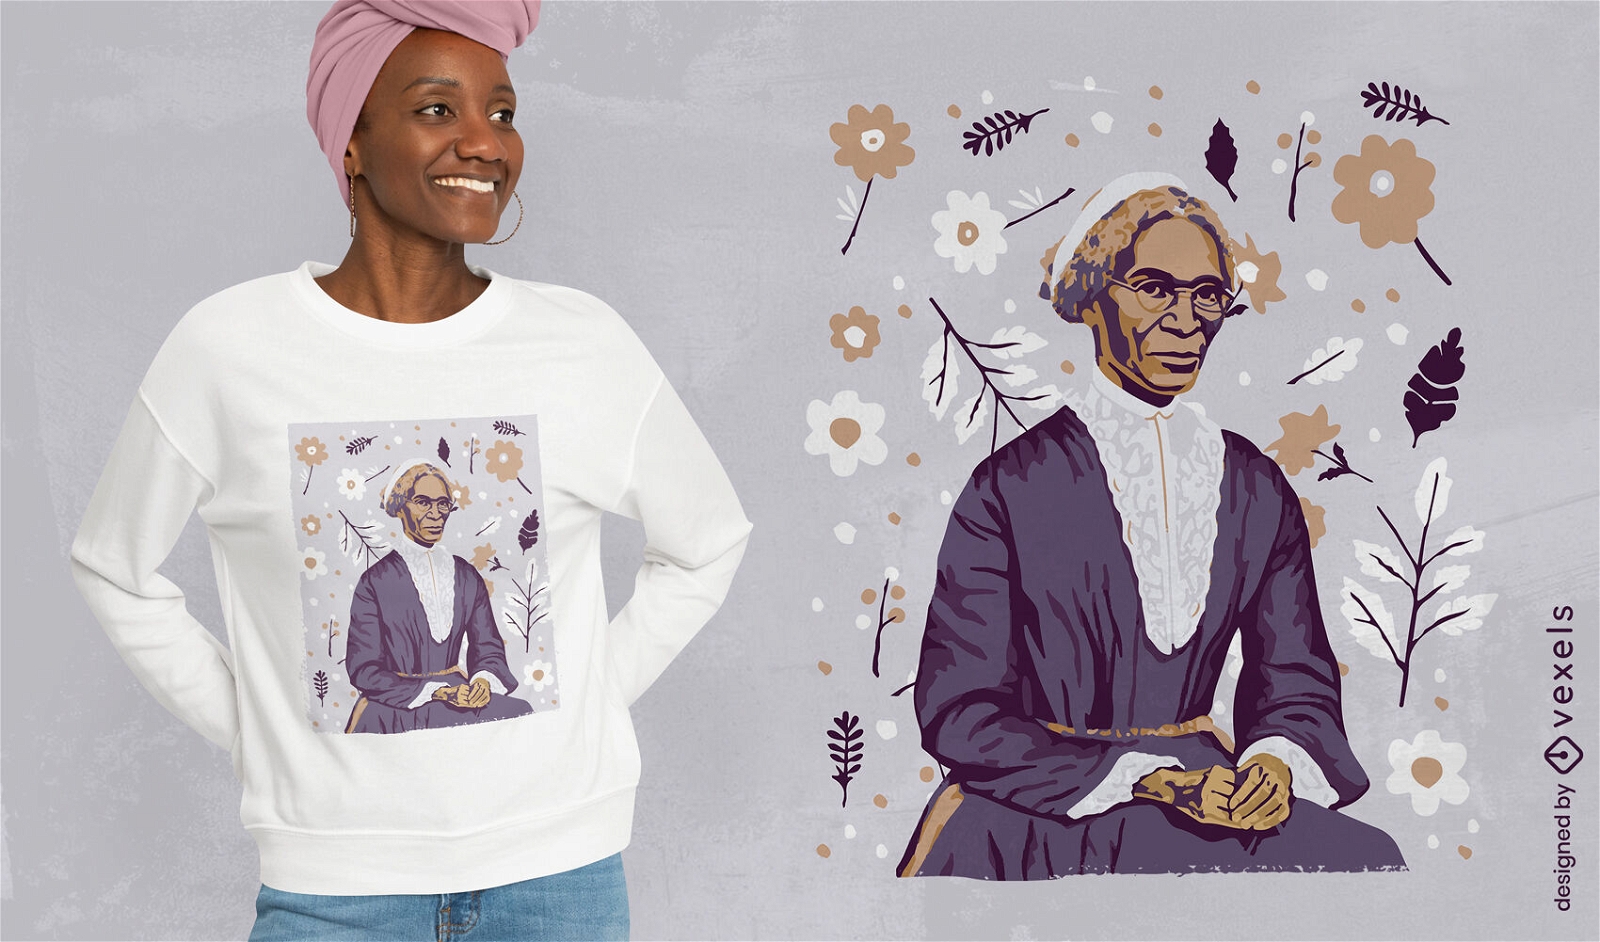 Diseño de camiseta inspiradora de Sojourner Truth.